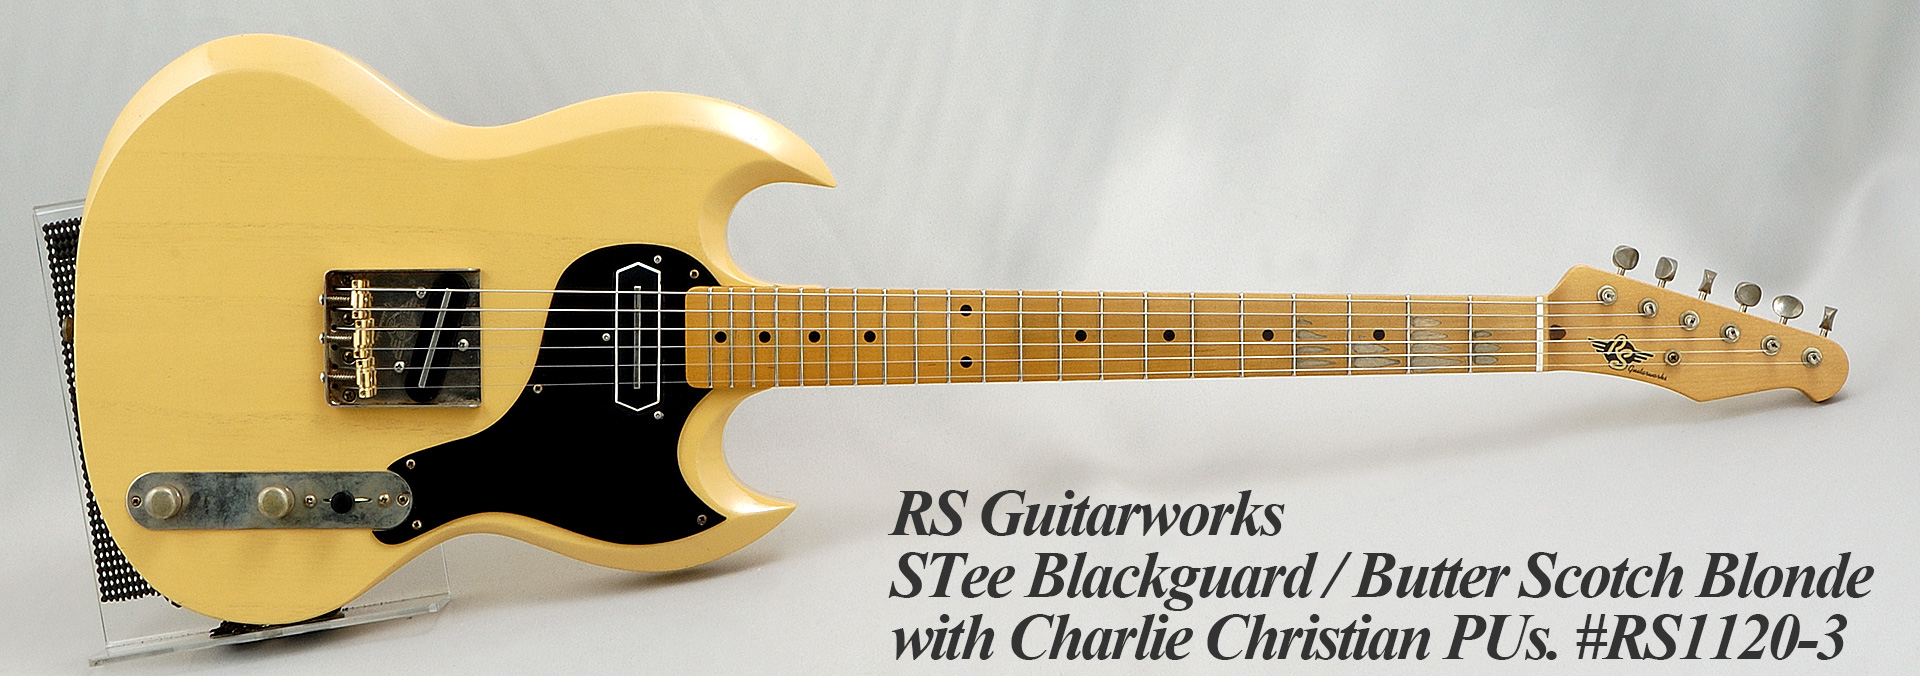 rs guitarworks stee blackguard www.krzysztofbialy.com